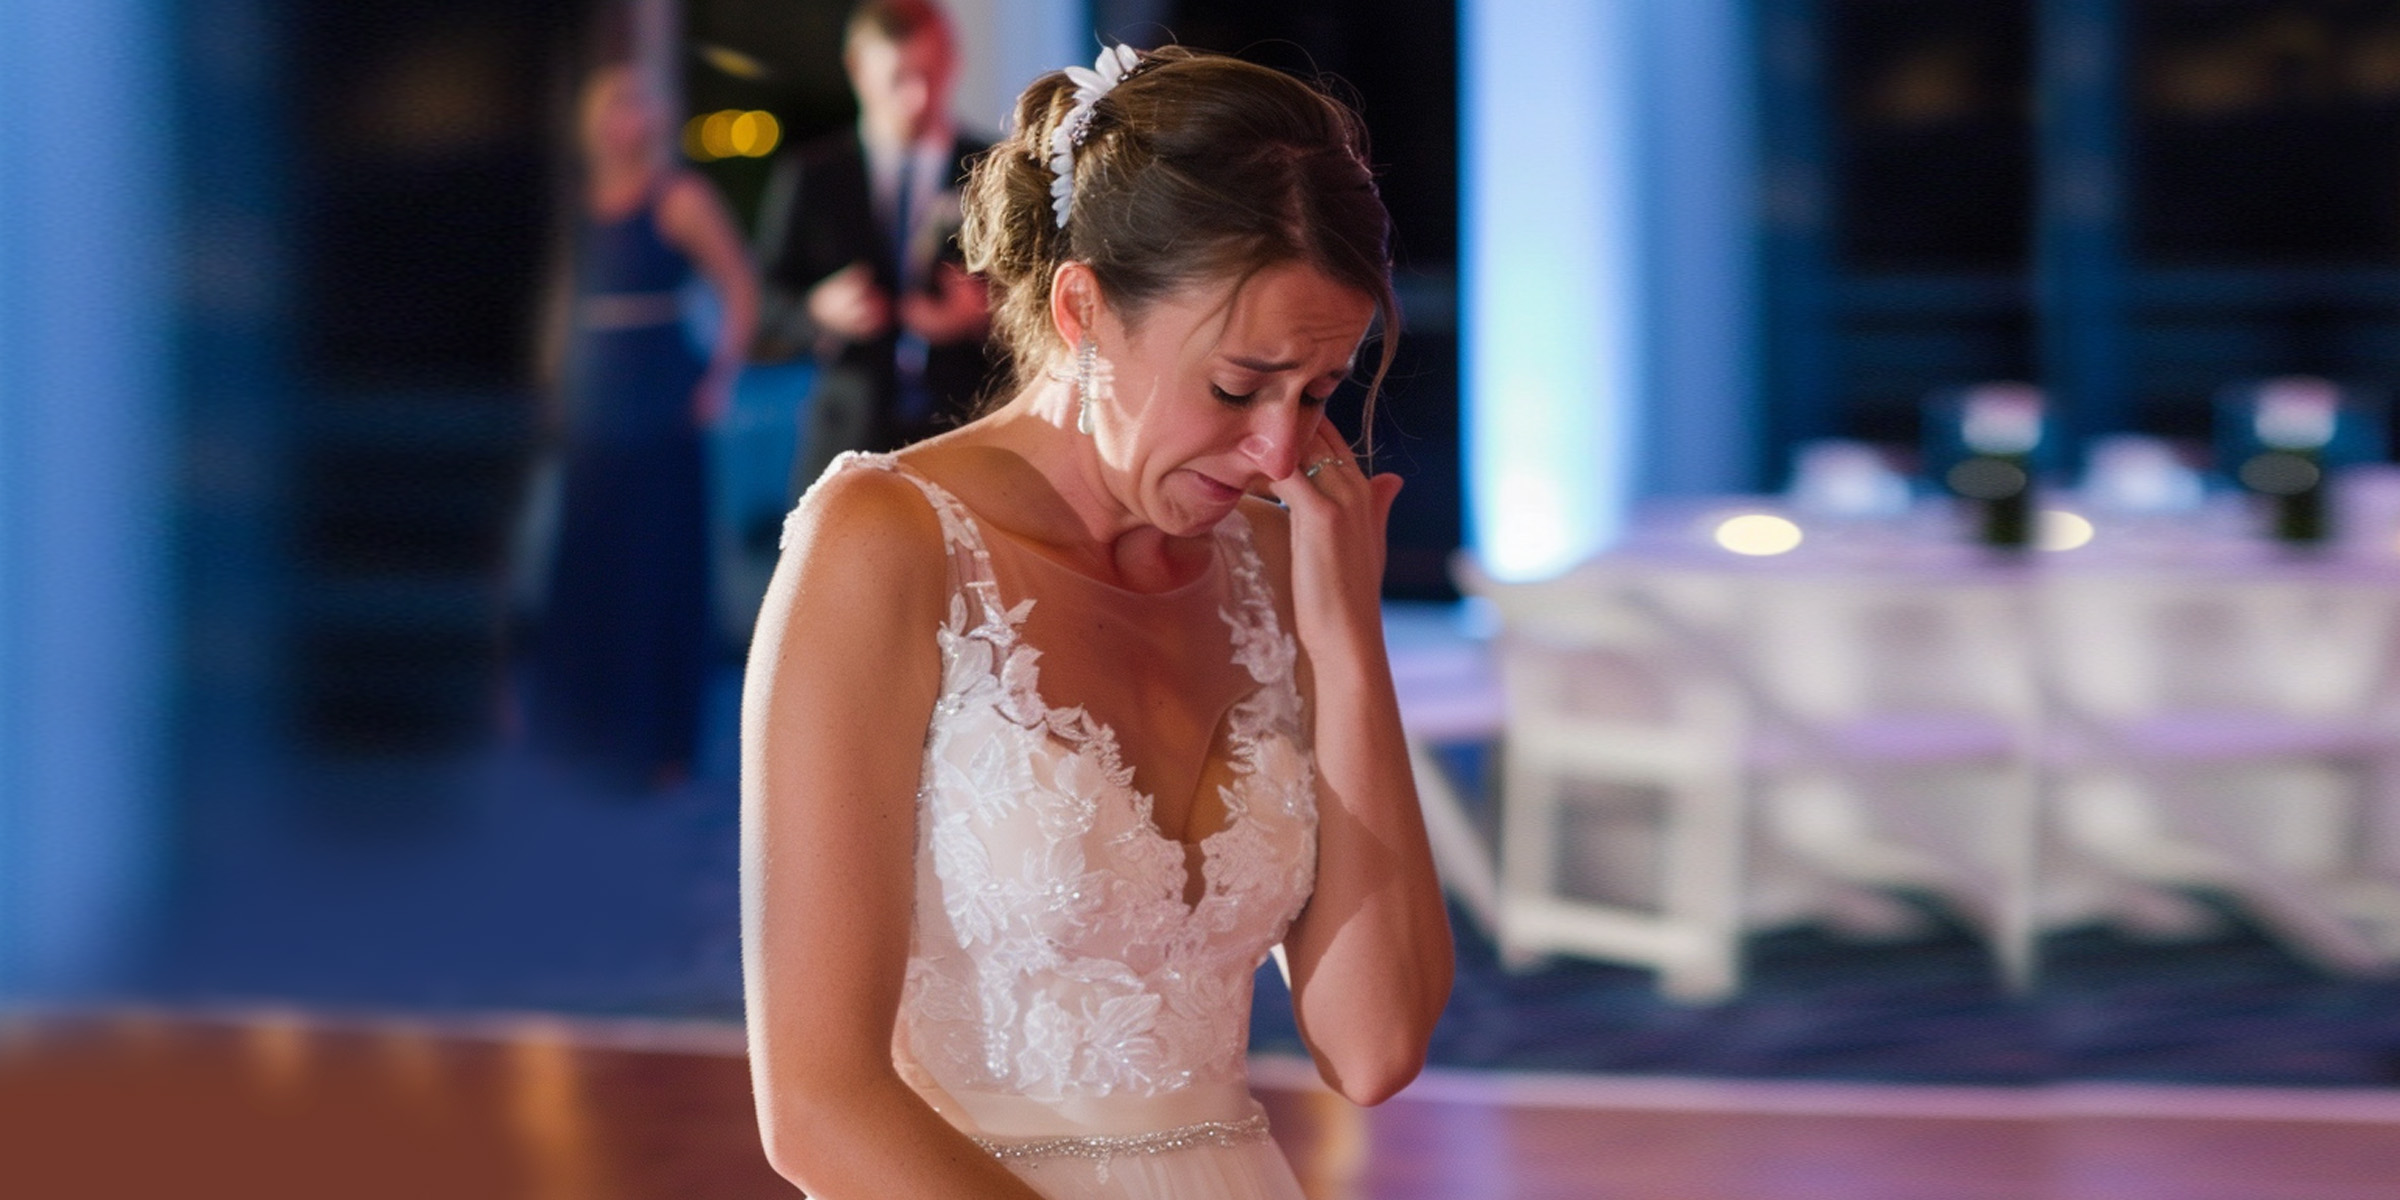 Una novia llorando | Fuente: AmoMama